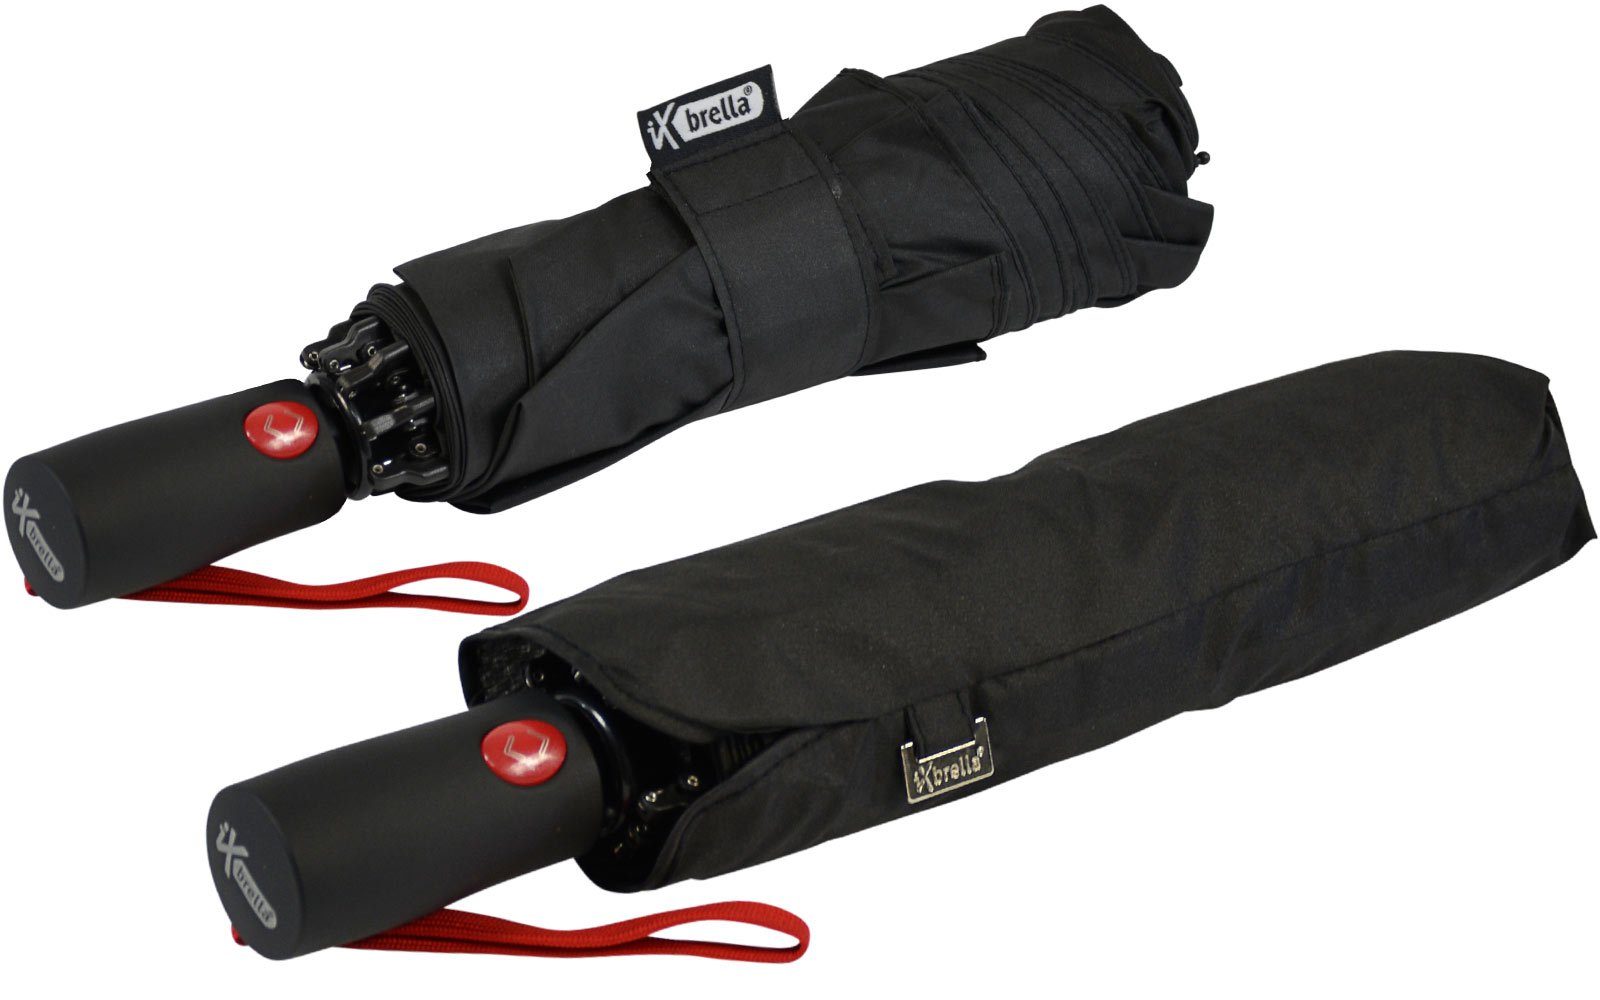 Fiberglas-Automatiksch, bunten stabilen Taschenregenschirm mit schwarz-rot Speichen Reverse iX-brella umgekehrt öffnender